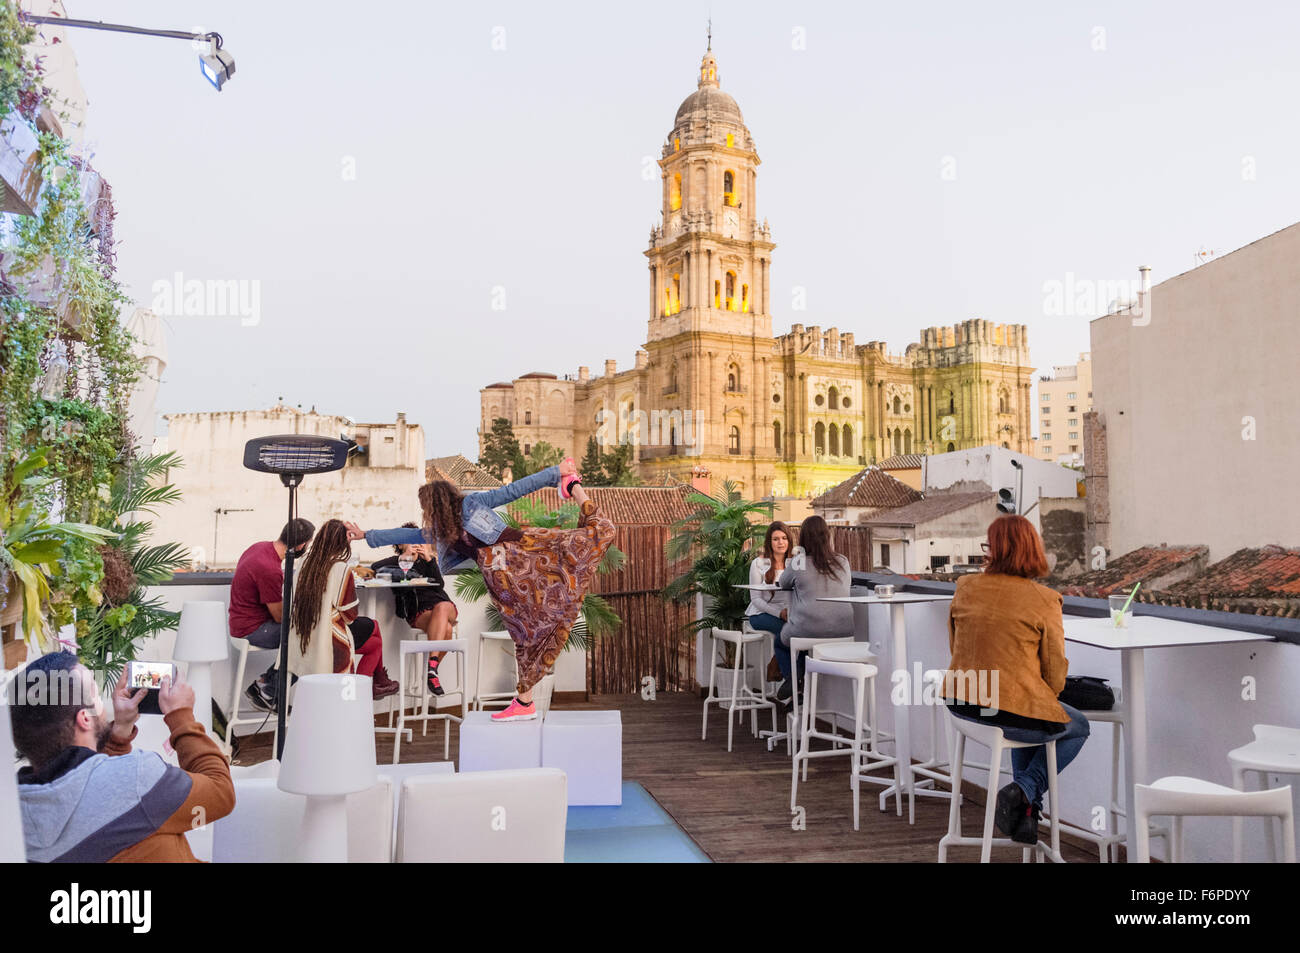 La gente en el bar-terraza en la azotea con la Catedral iluminada en el fondo. Málaga, Andalucía, España Foto de stock